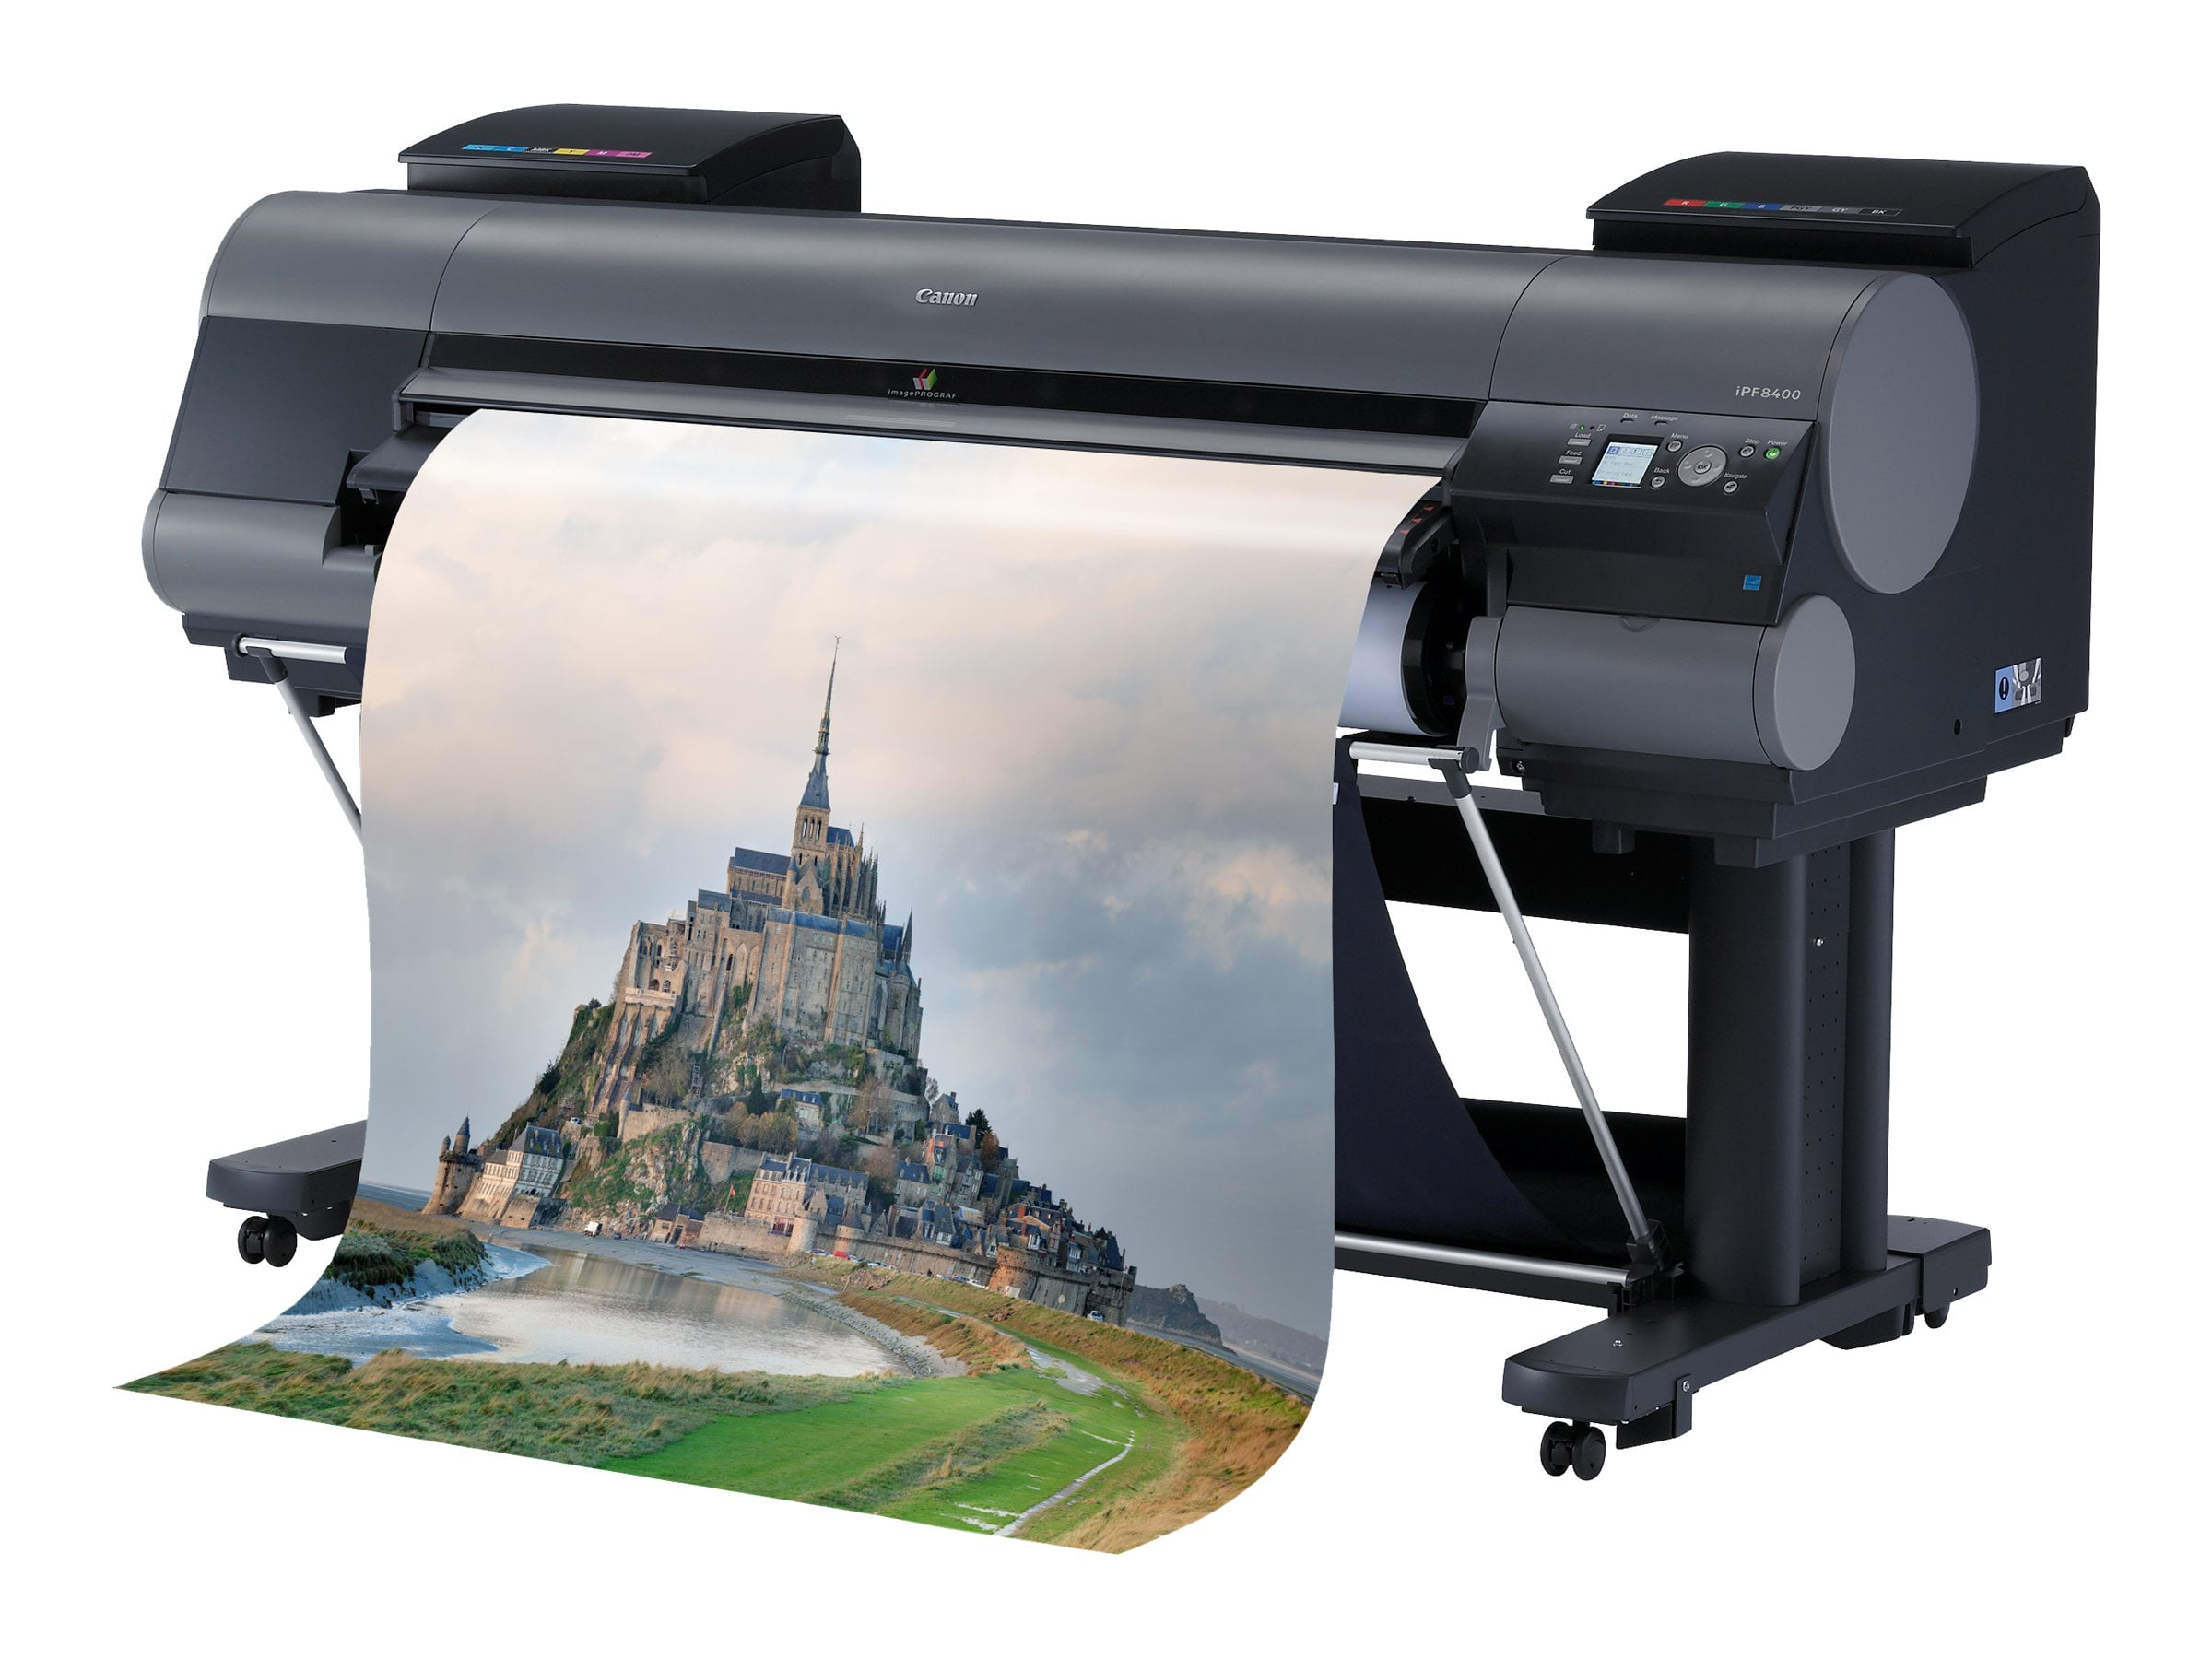 canon-imageprograf-ipf8400-44-large-format-printer-color-ink-jet